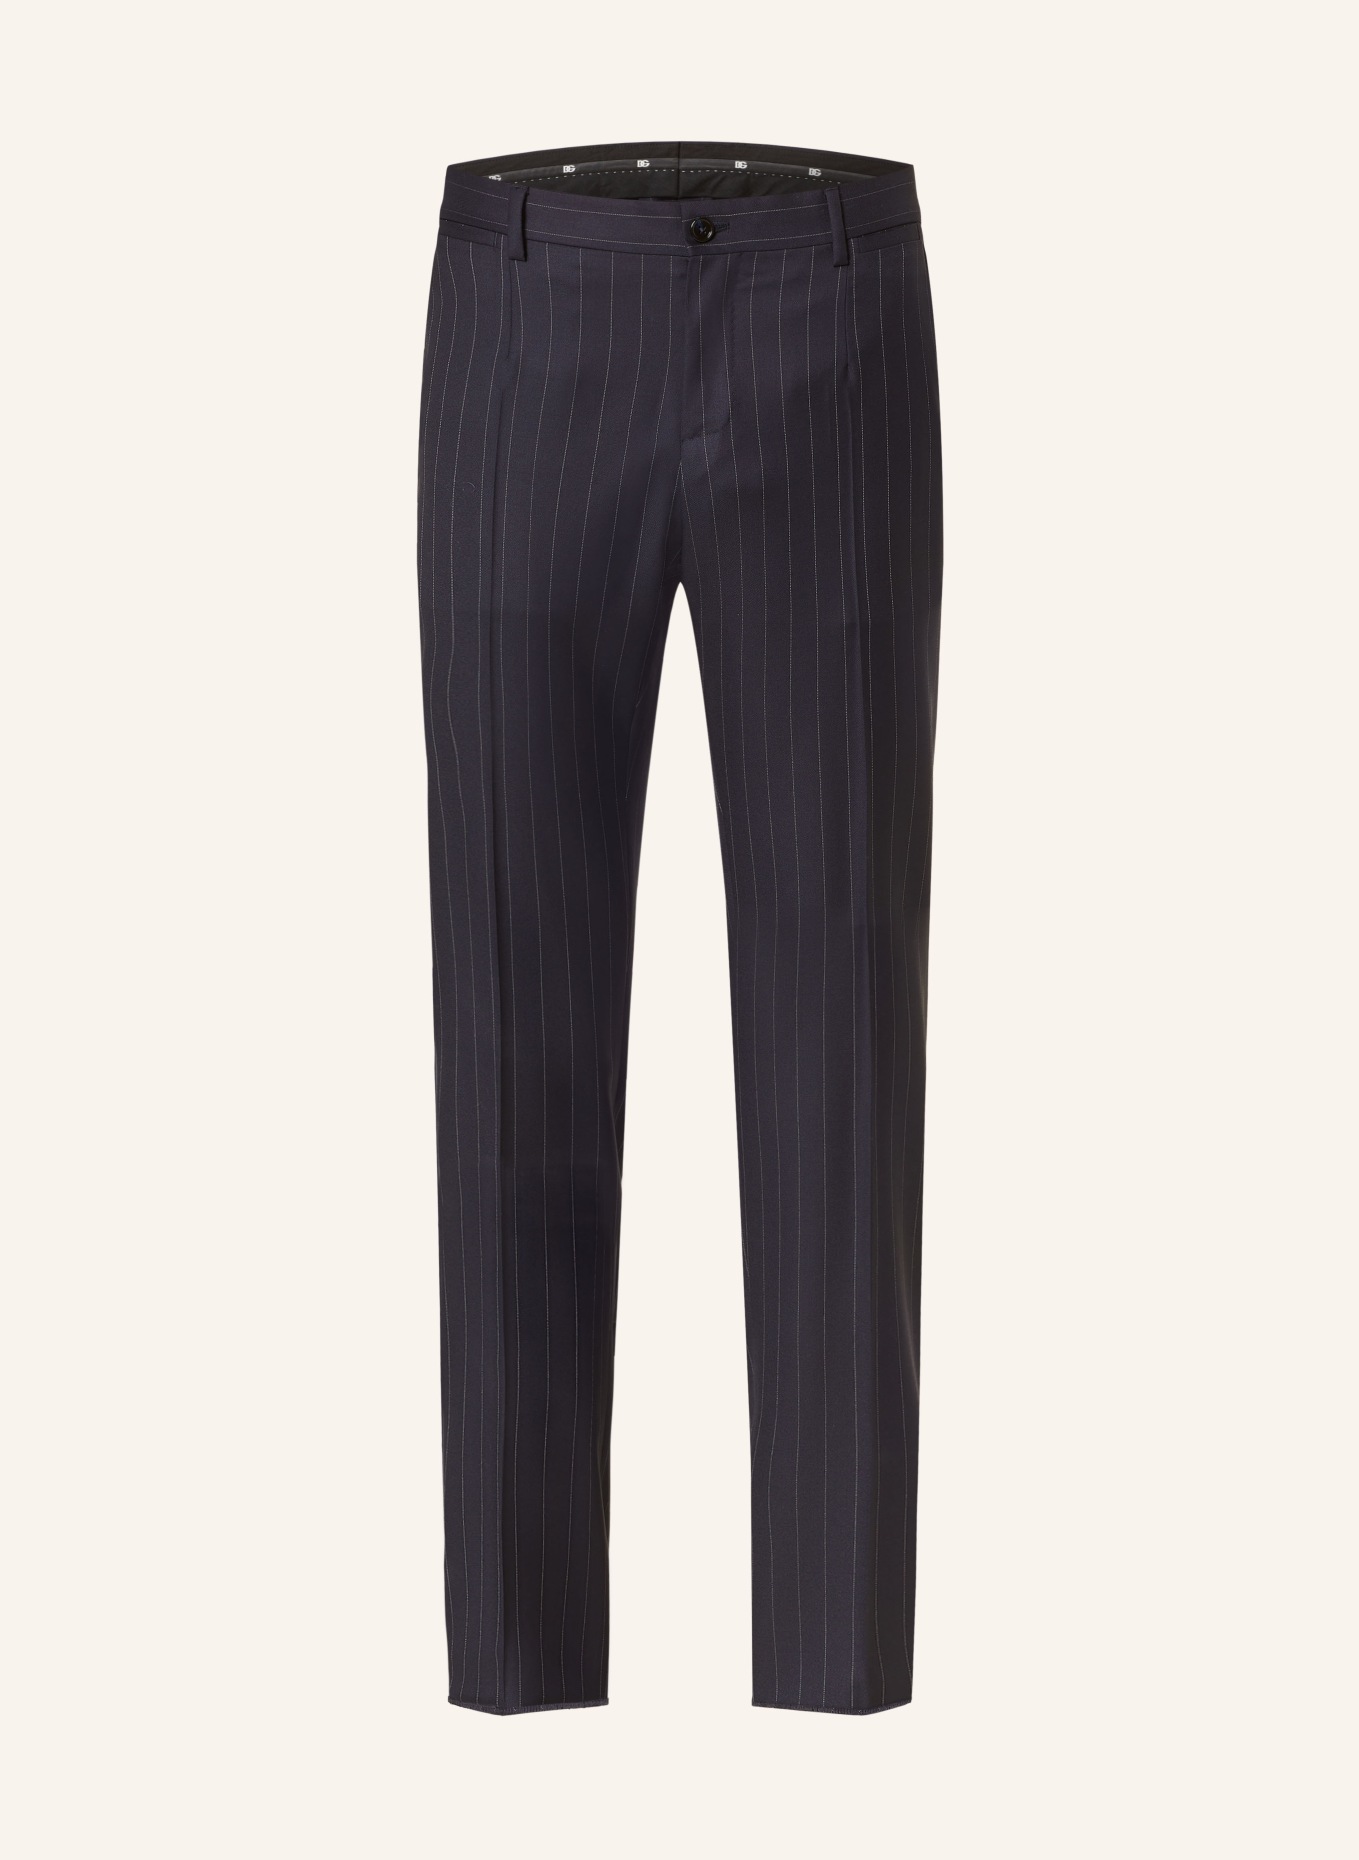 DOLCE & GABBANA Spodnie garniturowe slim fit, Kolor: S8052 Rigato (Obrazek 1)